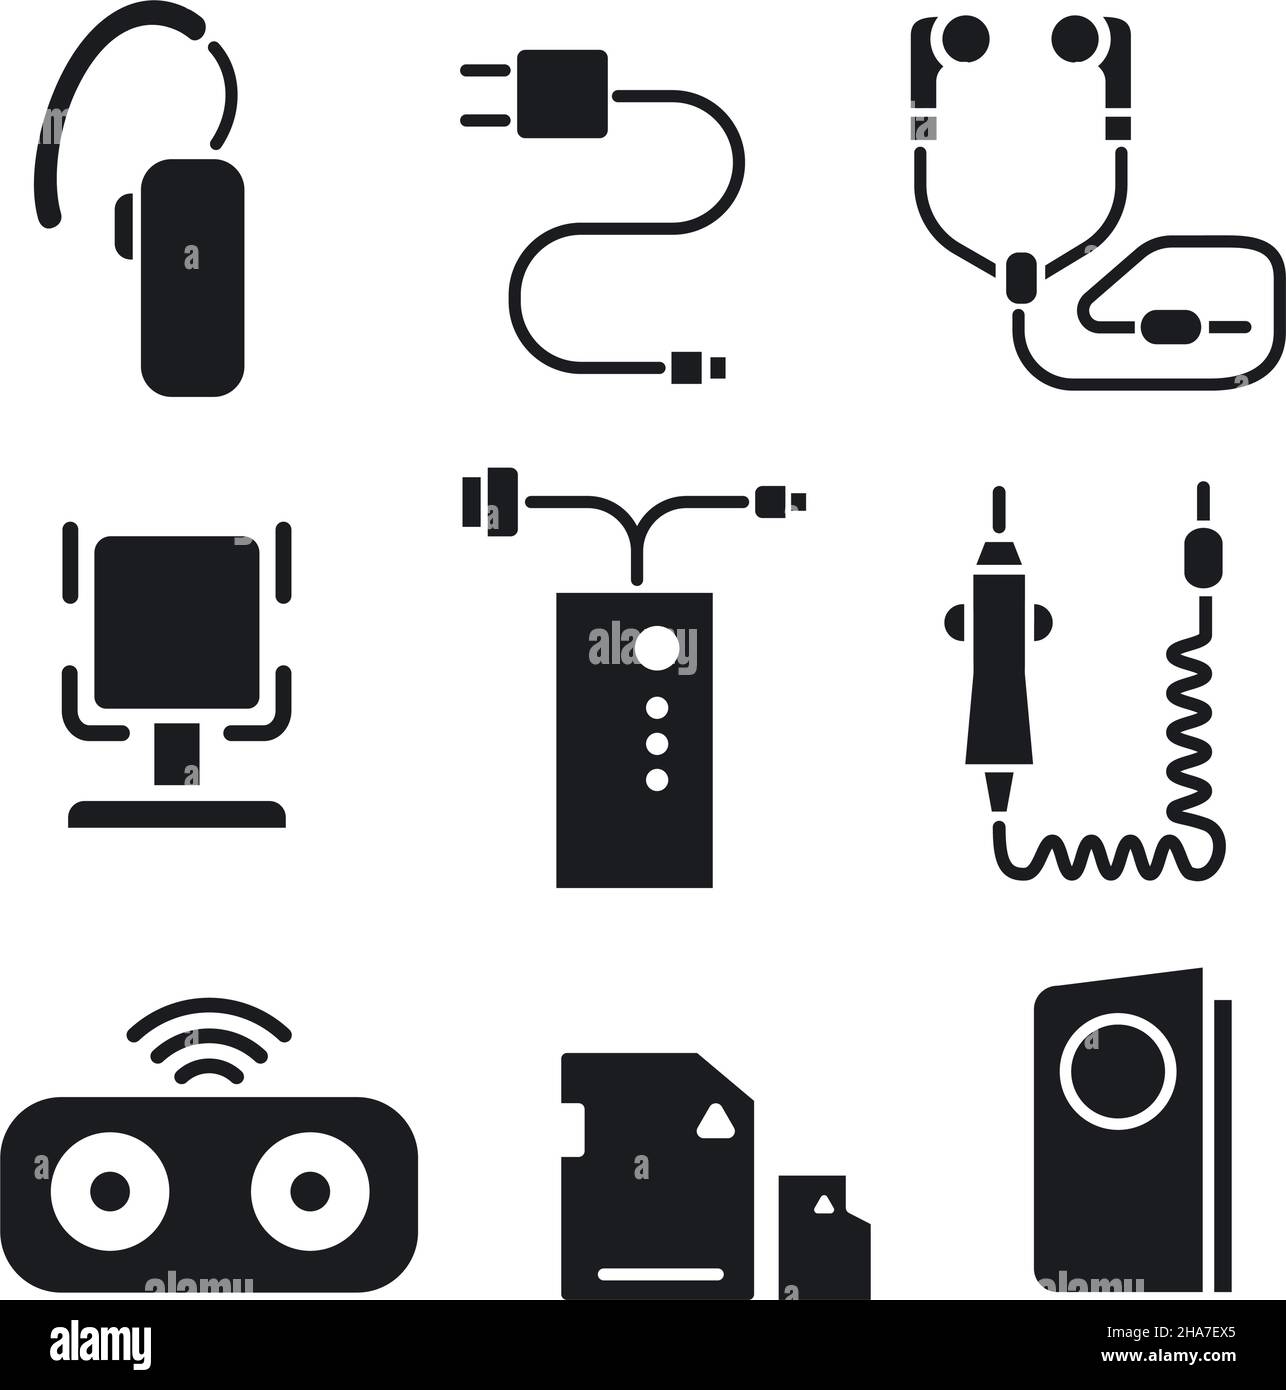 https://c8.alamy.com/compes/2ha7ex5/conjunto-de-iconos-de-accesorios-y-equipos-digitales-para-telefonos-moviles-2ha7ex5.jpg